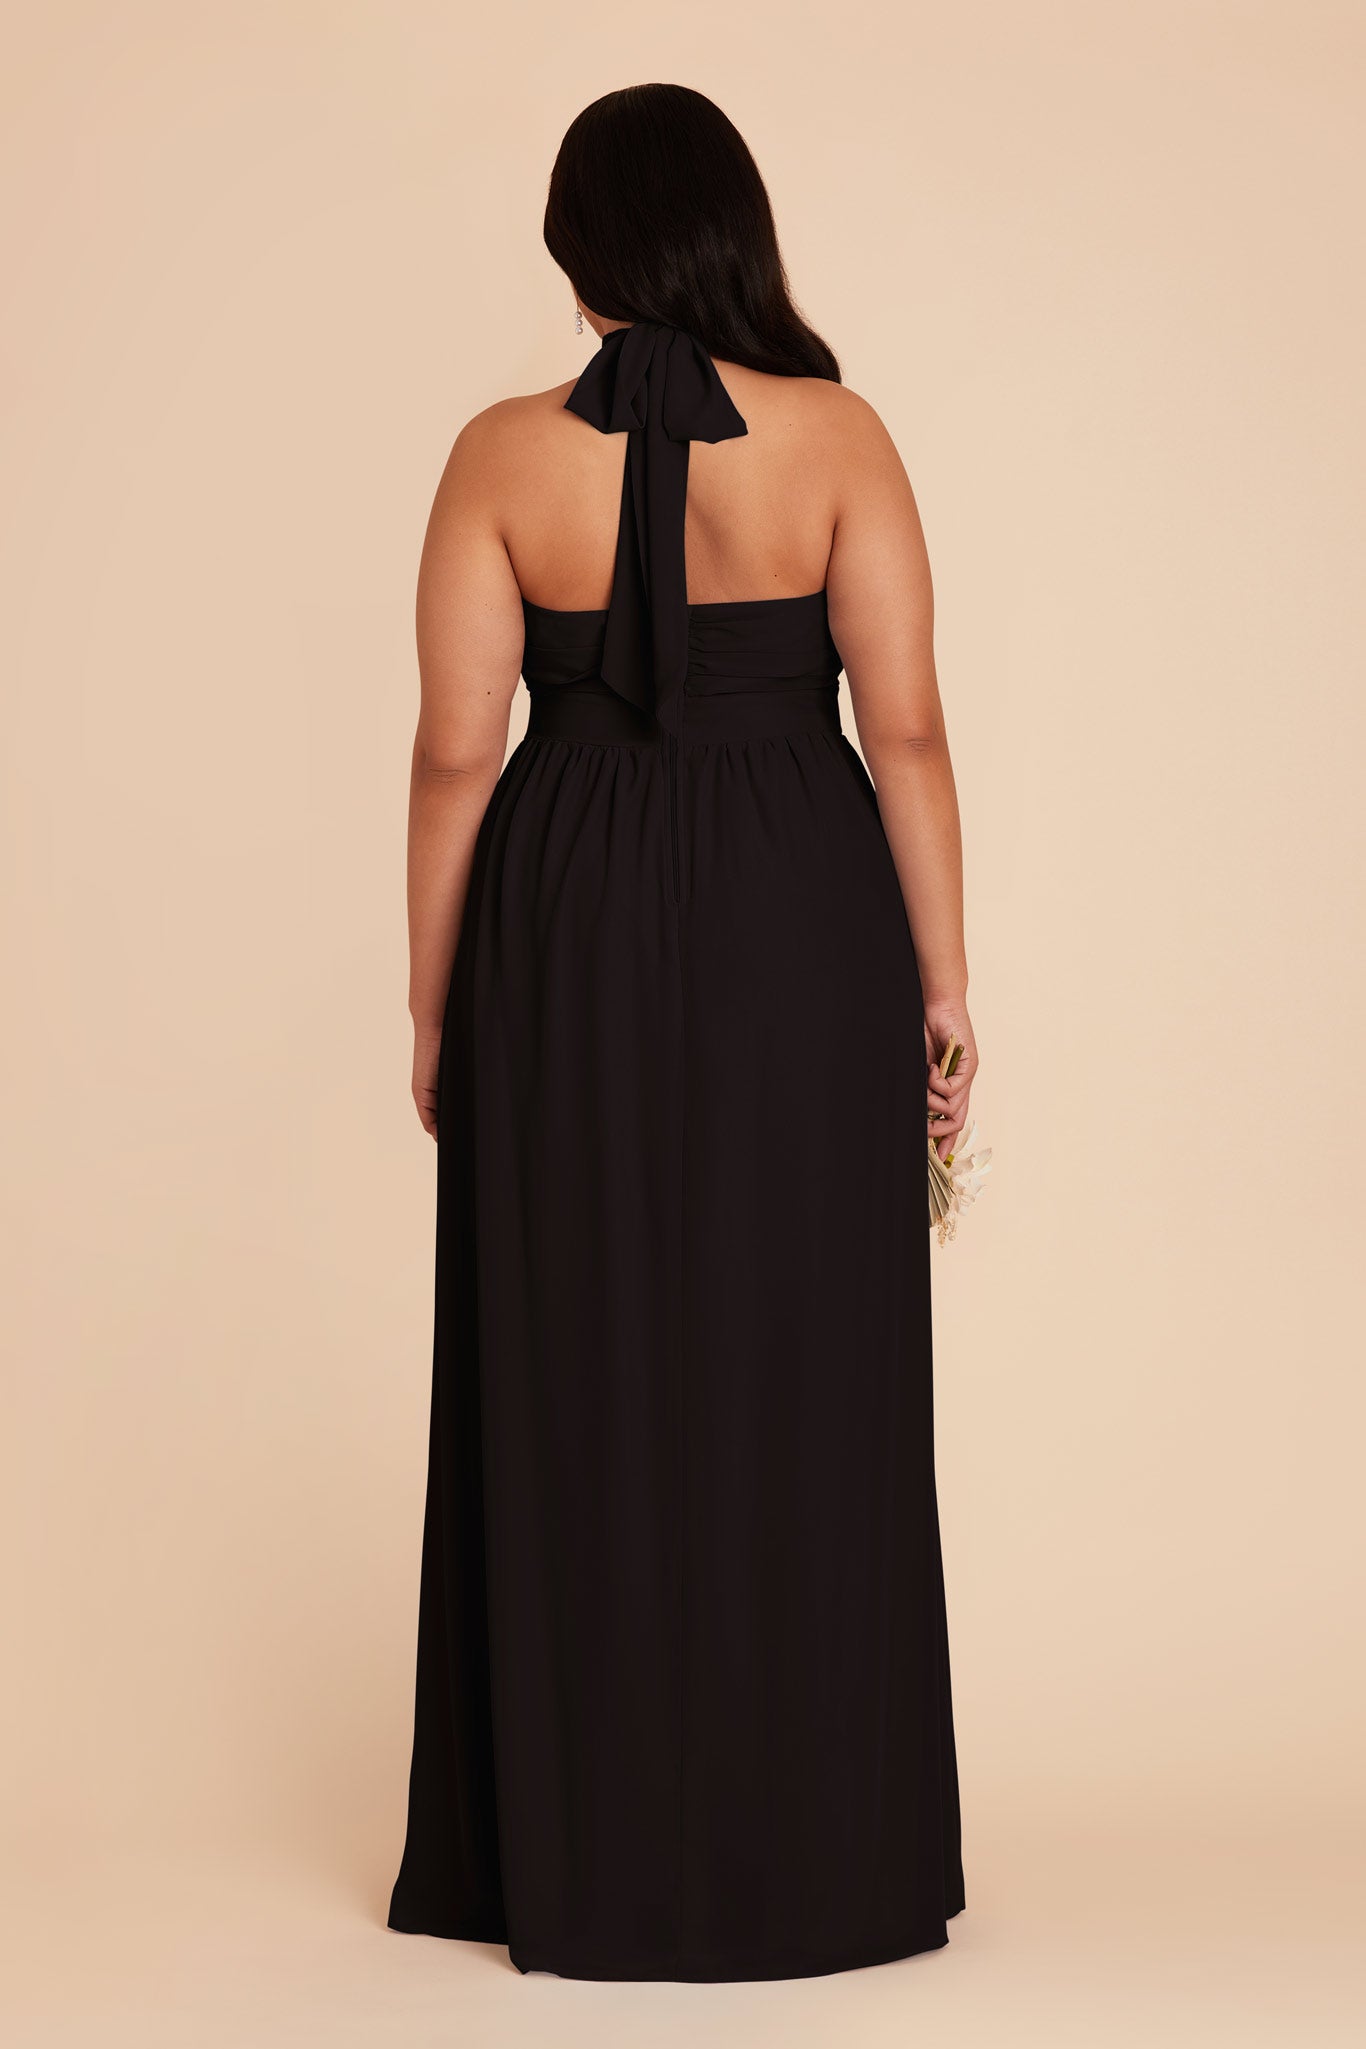 Black Joyce Chiffon Dress by Birdy Grey